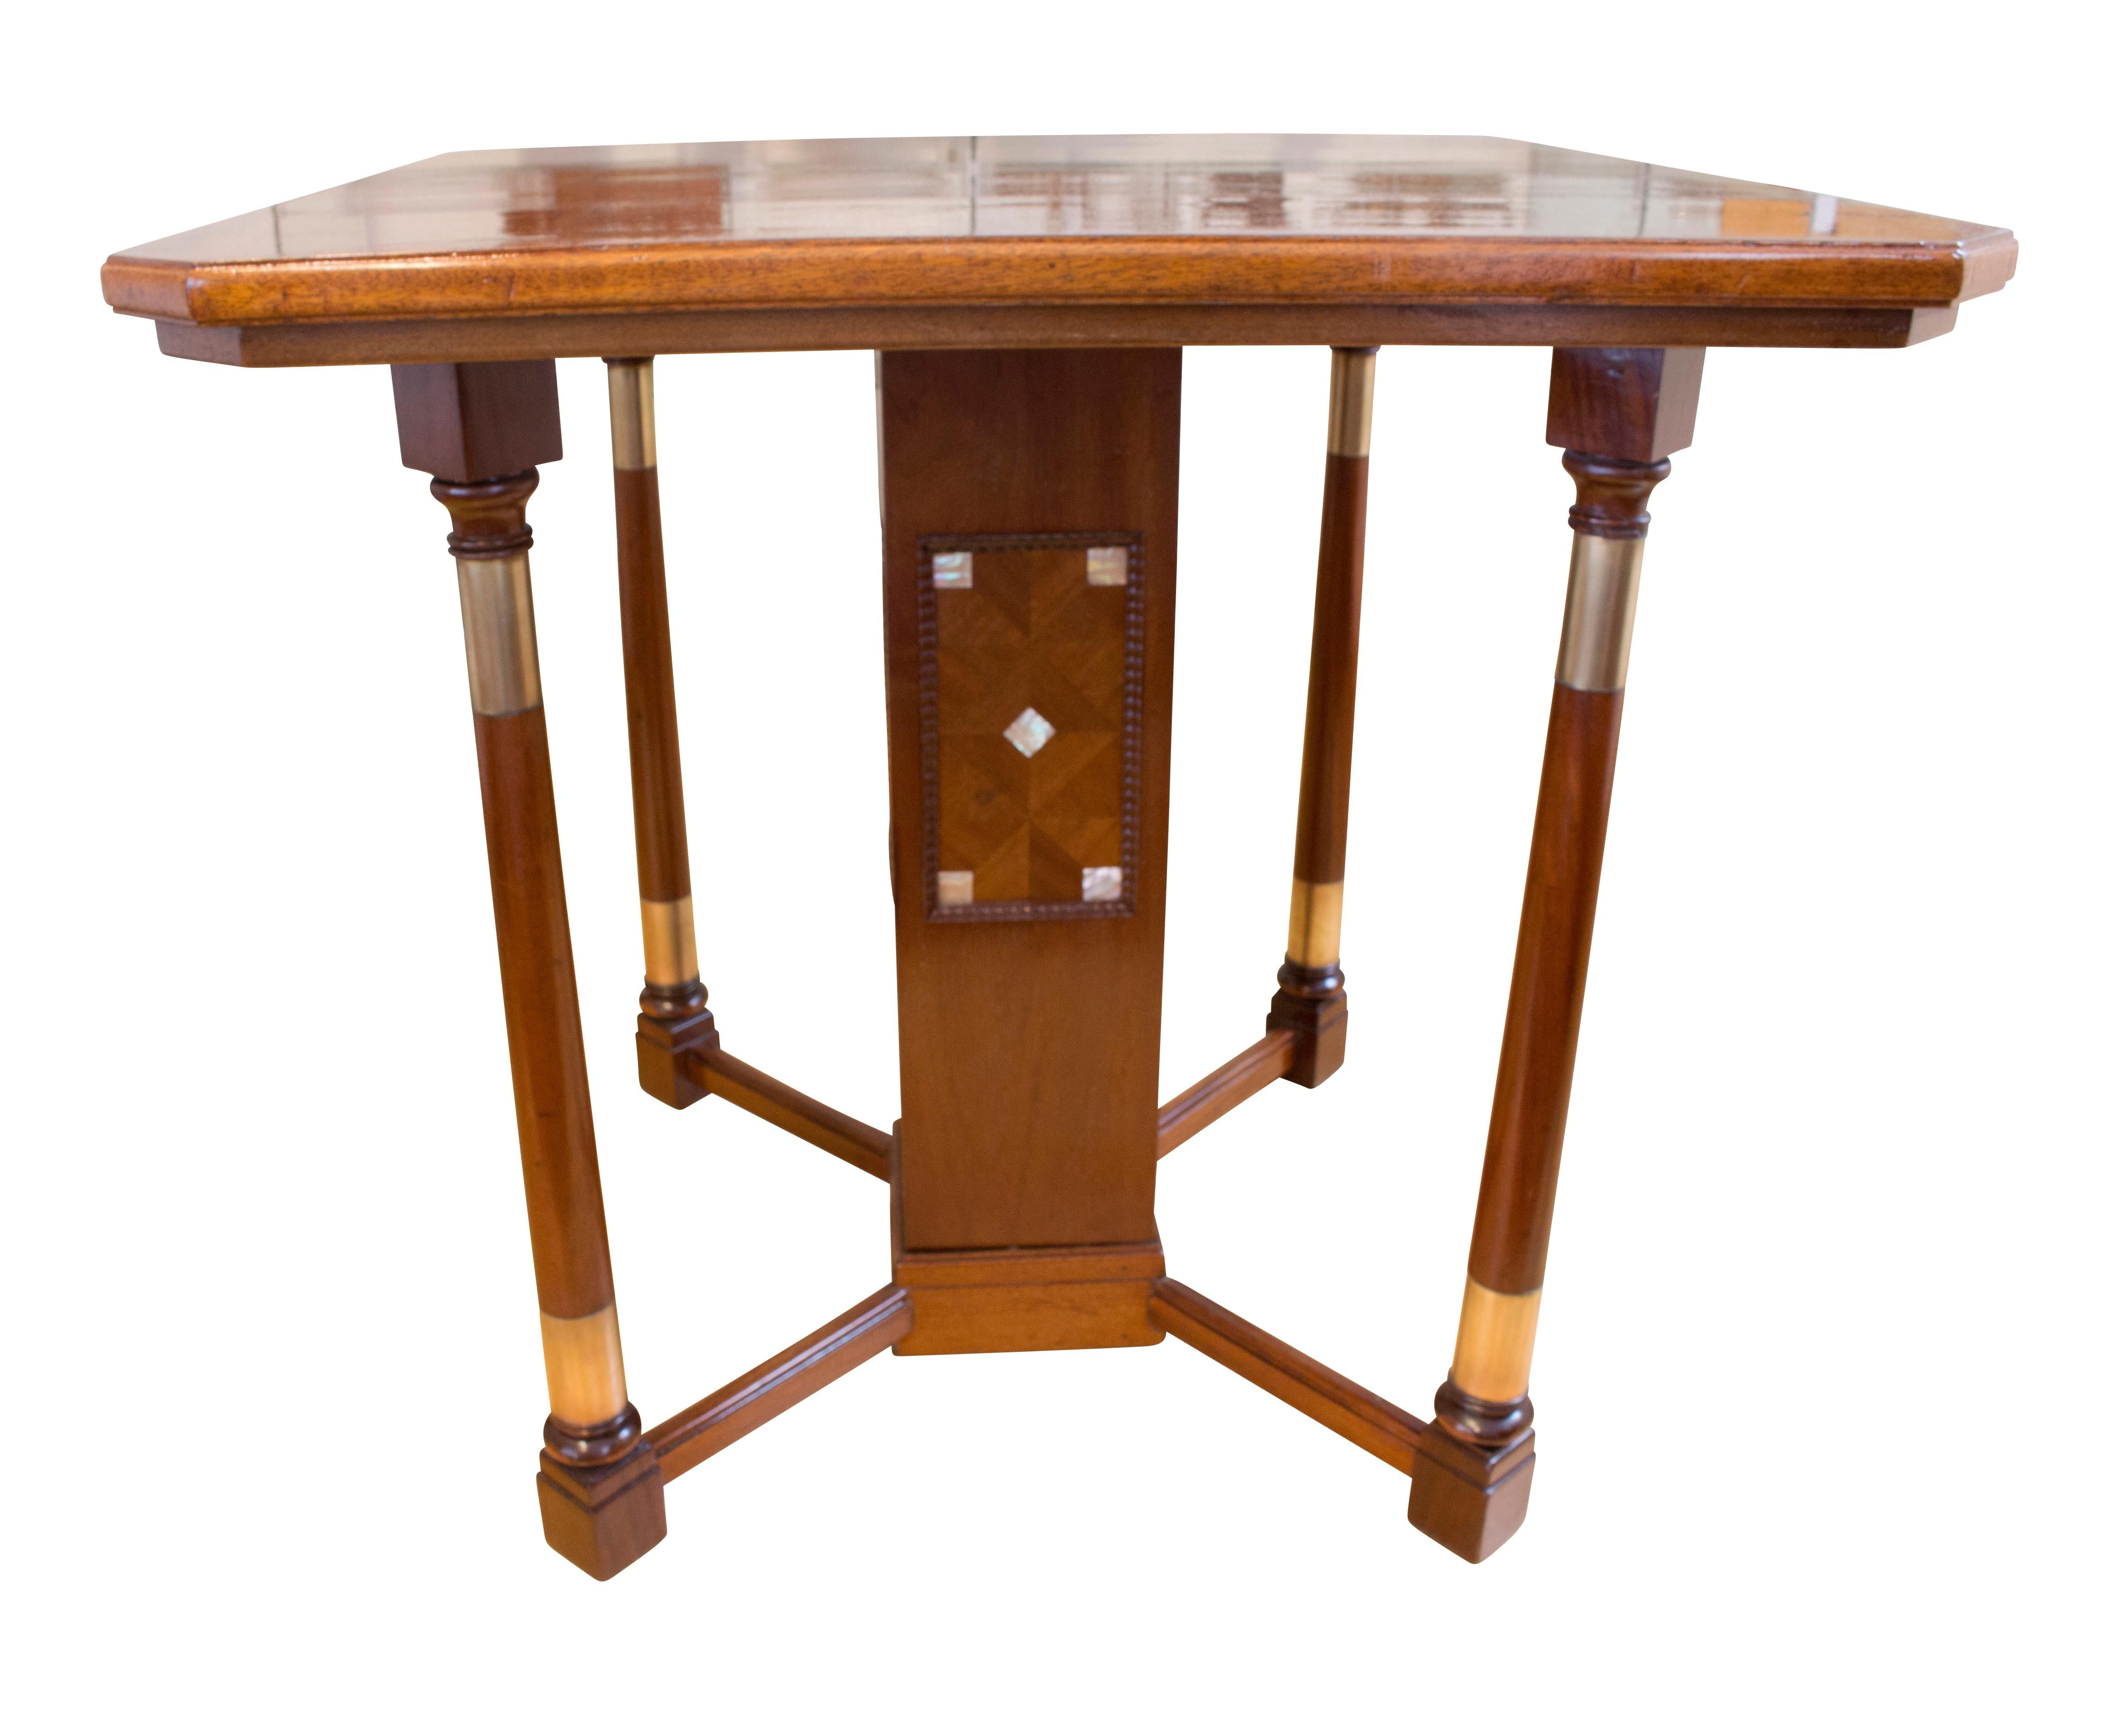 Art Nouveau Mahogany Salon Table (Art nouveau)